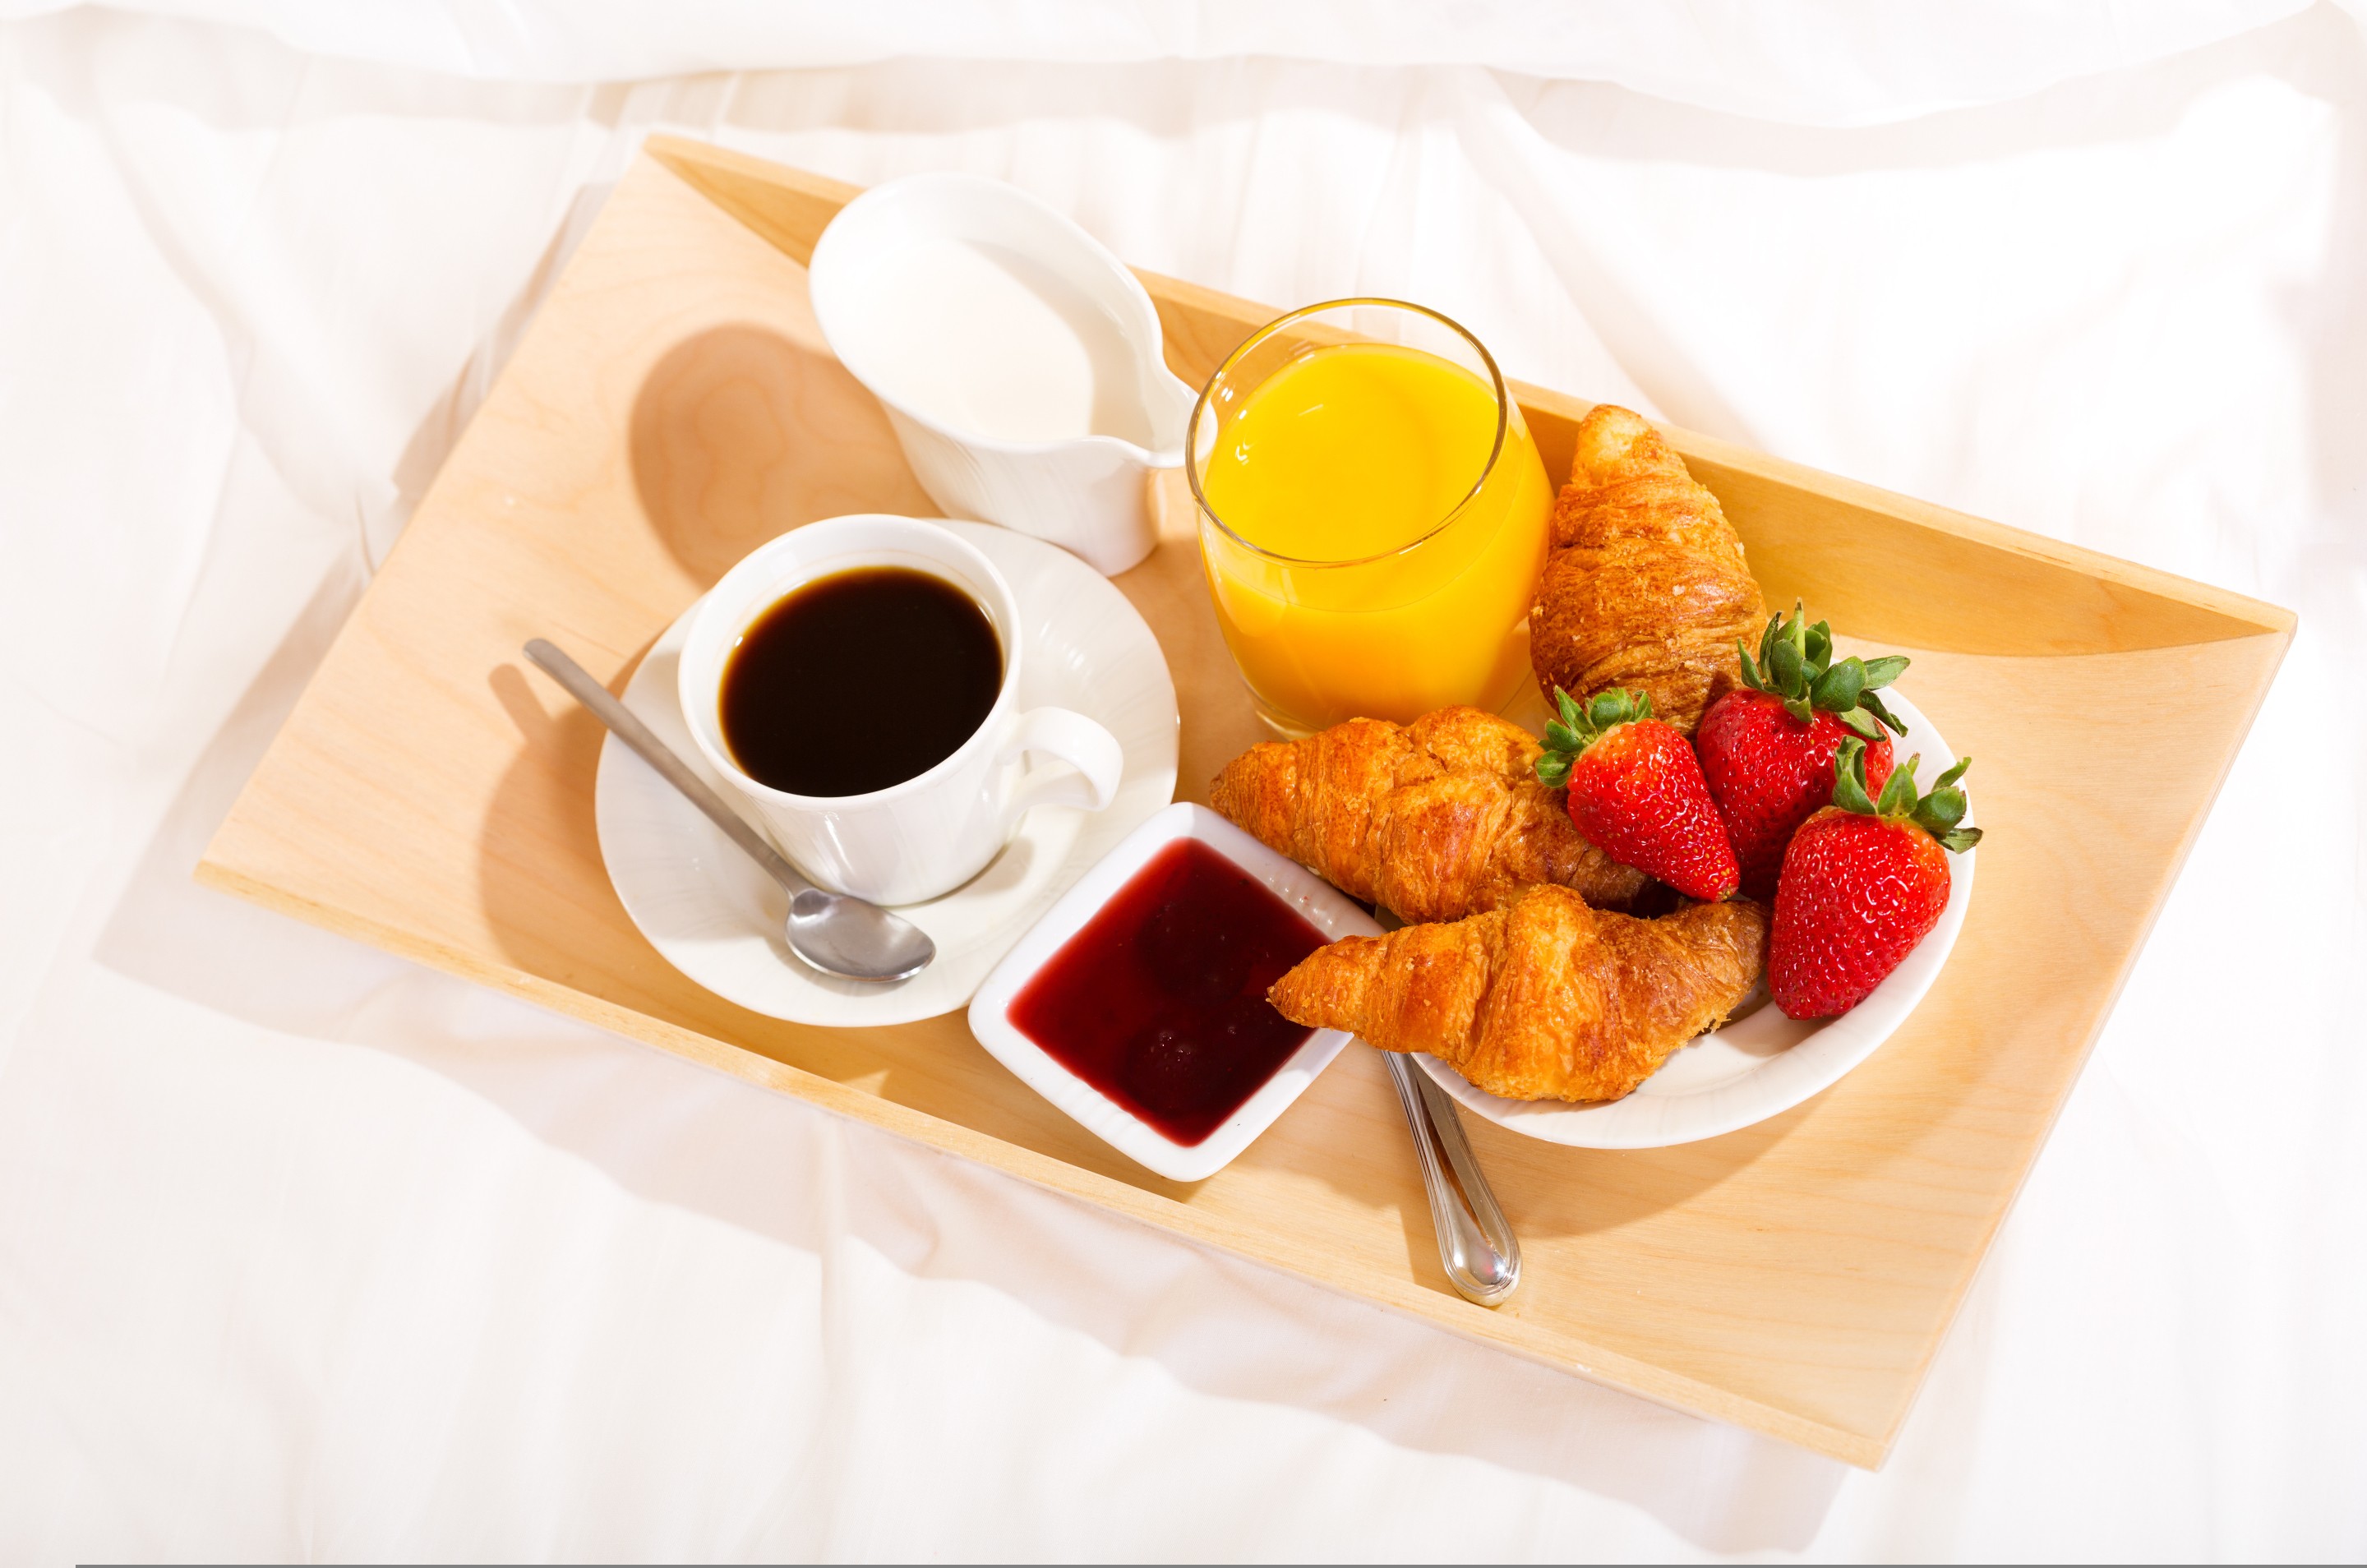 General 2880x1908 coffee breakfast food strawberries fruit cup spoon croissants